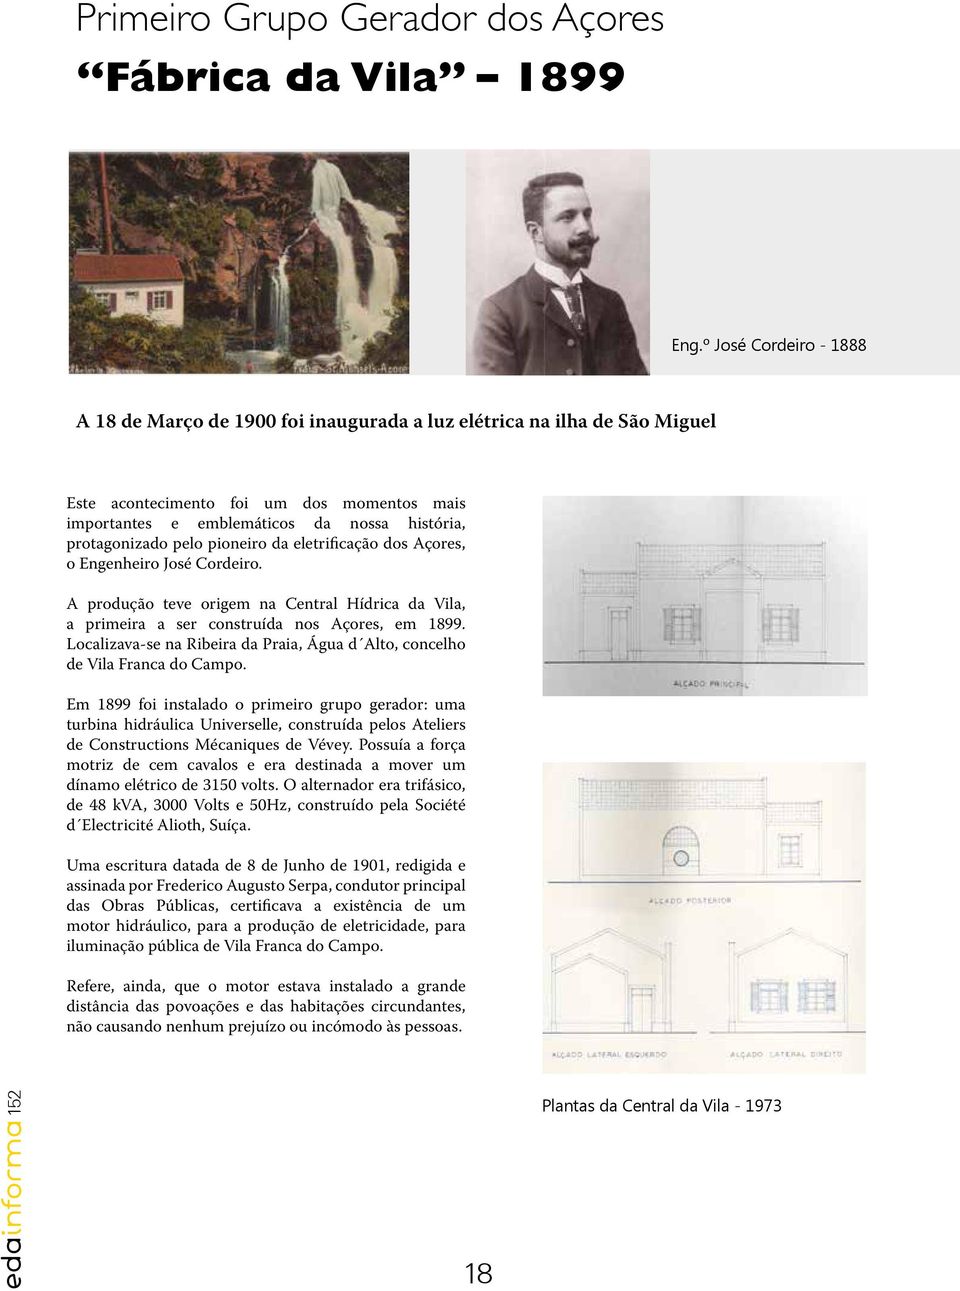 protagonizado pelo pioneiro da eletrificação dos Açores, o Engenheiro José Cordeiro. A produção teve origem na Central Hídrica da Vila, a primeira a ser construída nos Açores, em 1899.